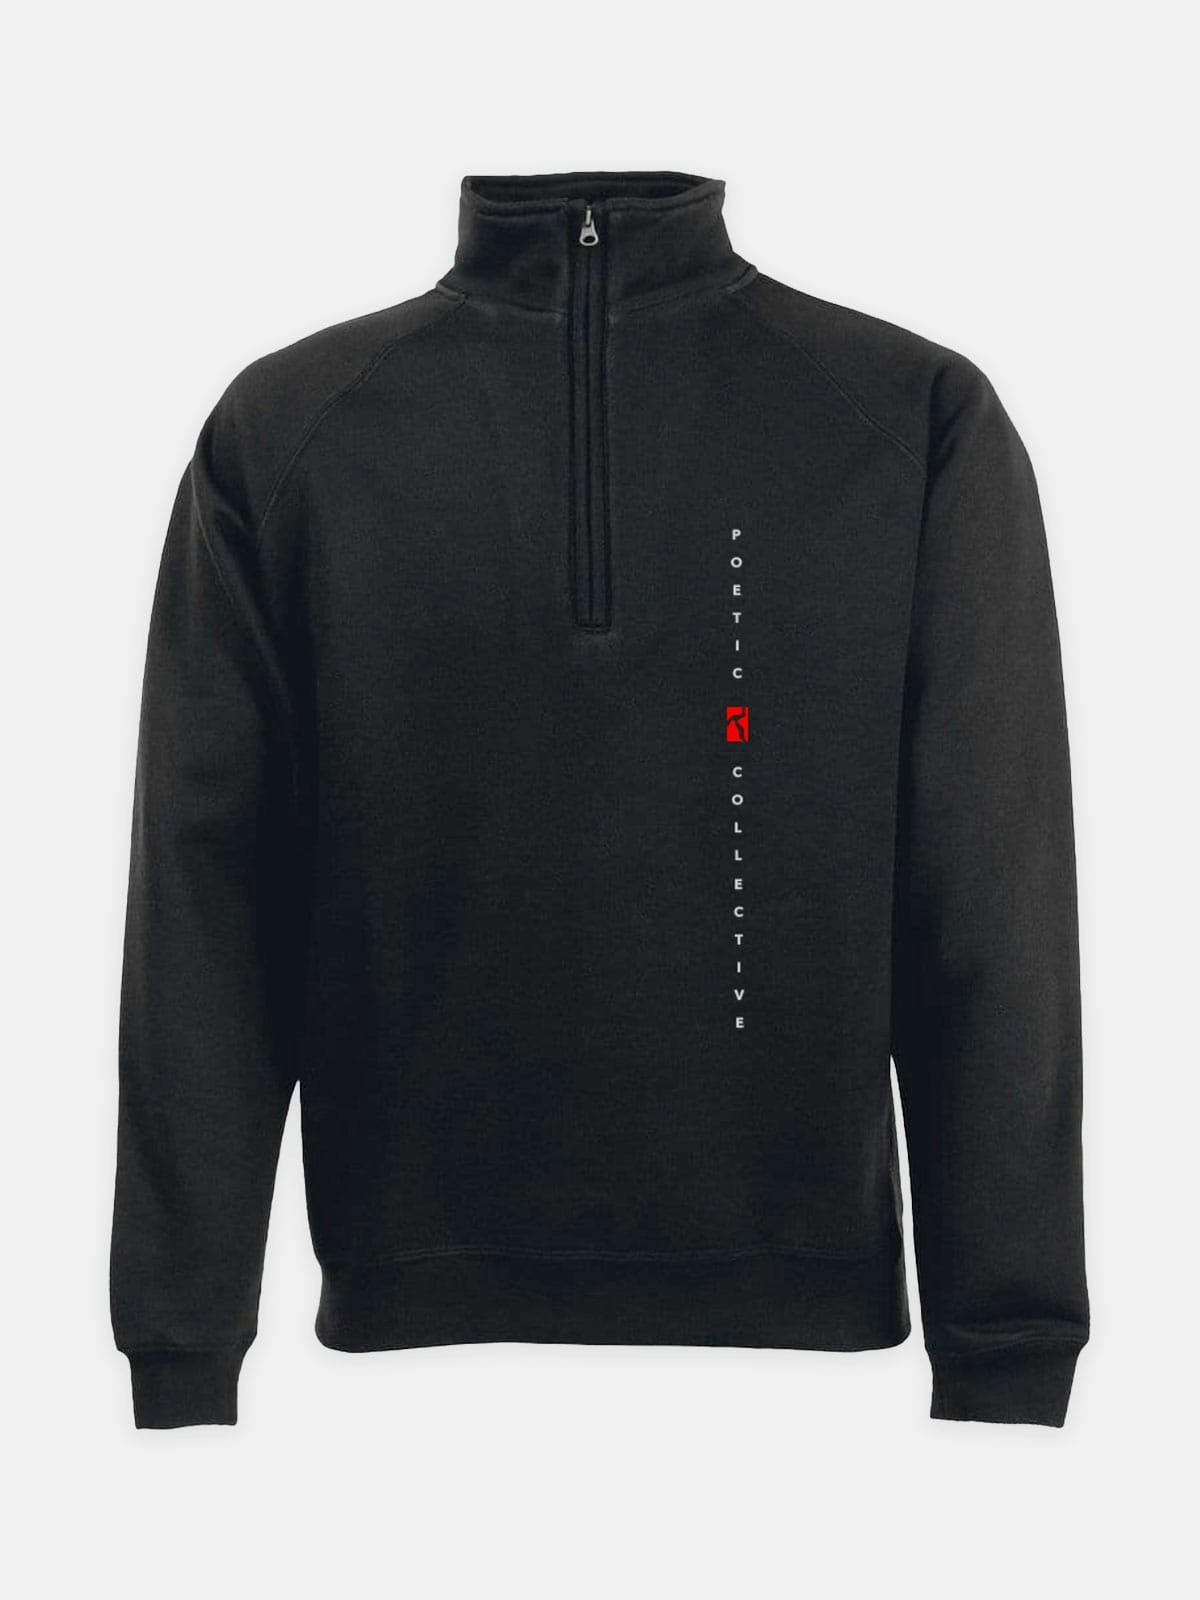 Poetic Collective Vertical Zip-neck Sweater Black 1